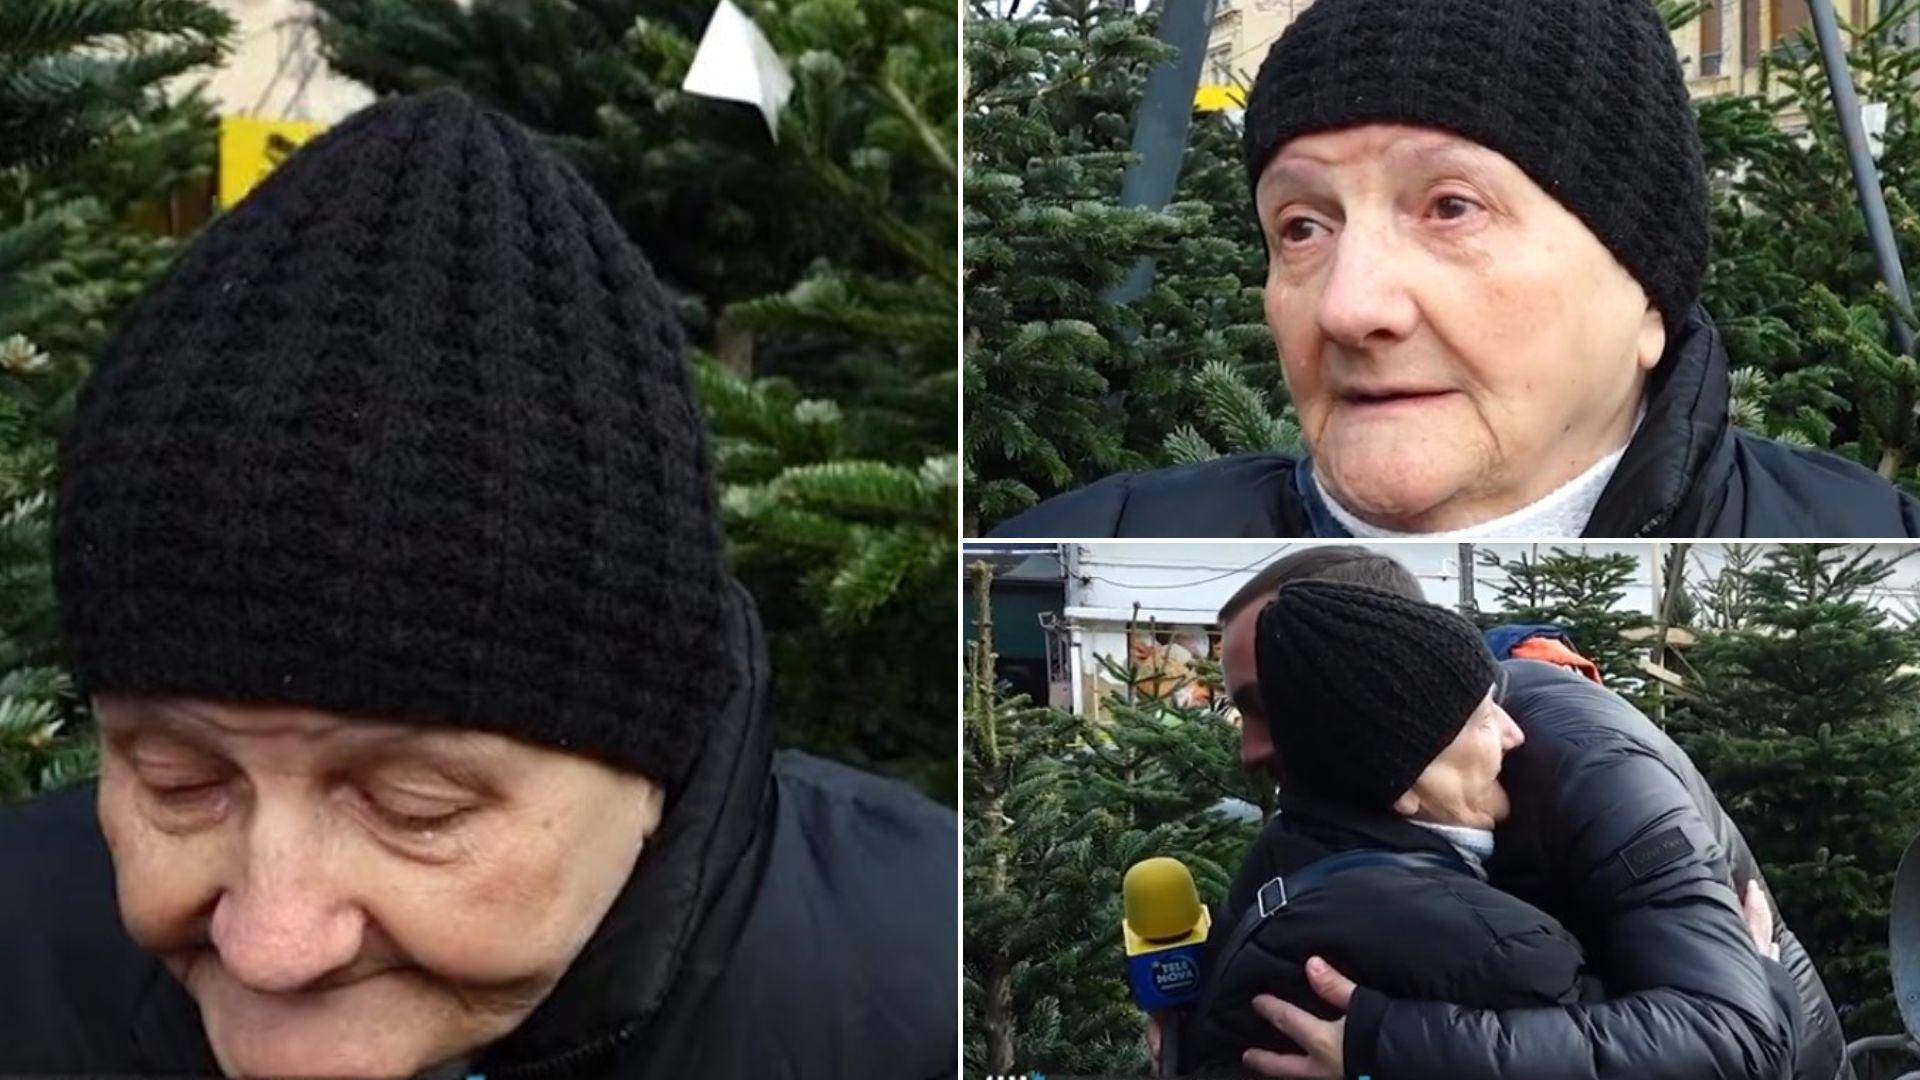 Bucuria unei bunici! Reacția unei bătrânici când primește un brad de Crăciun de la reporterul căruia i-a zis că nu-și permite unul